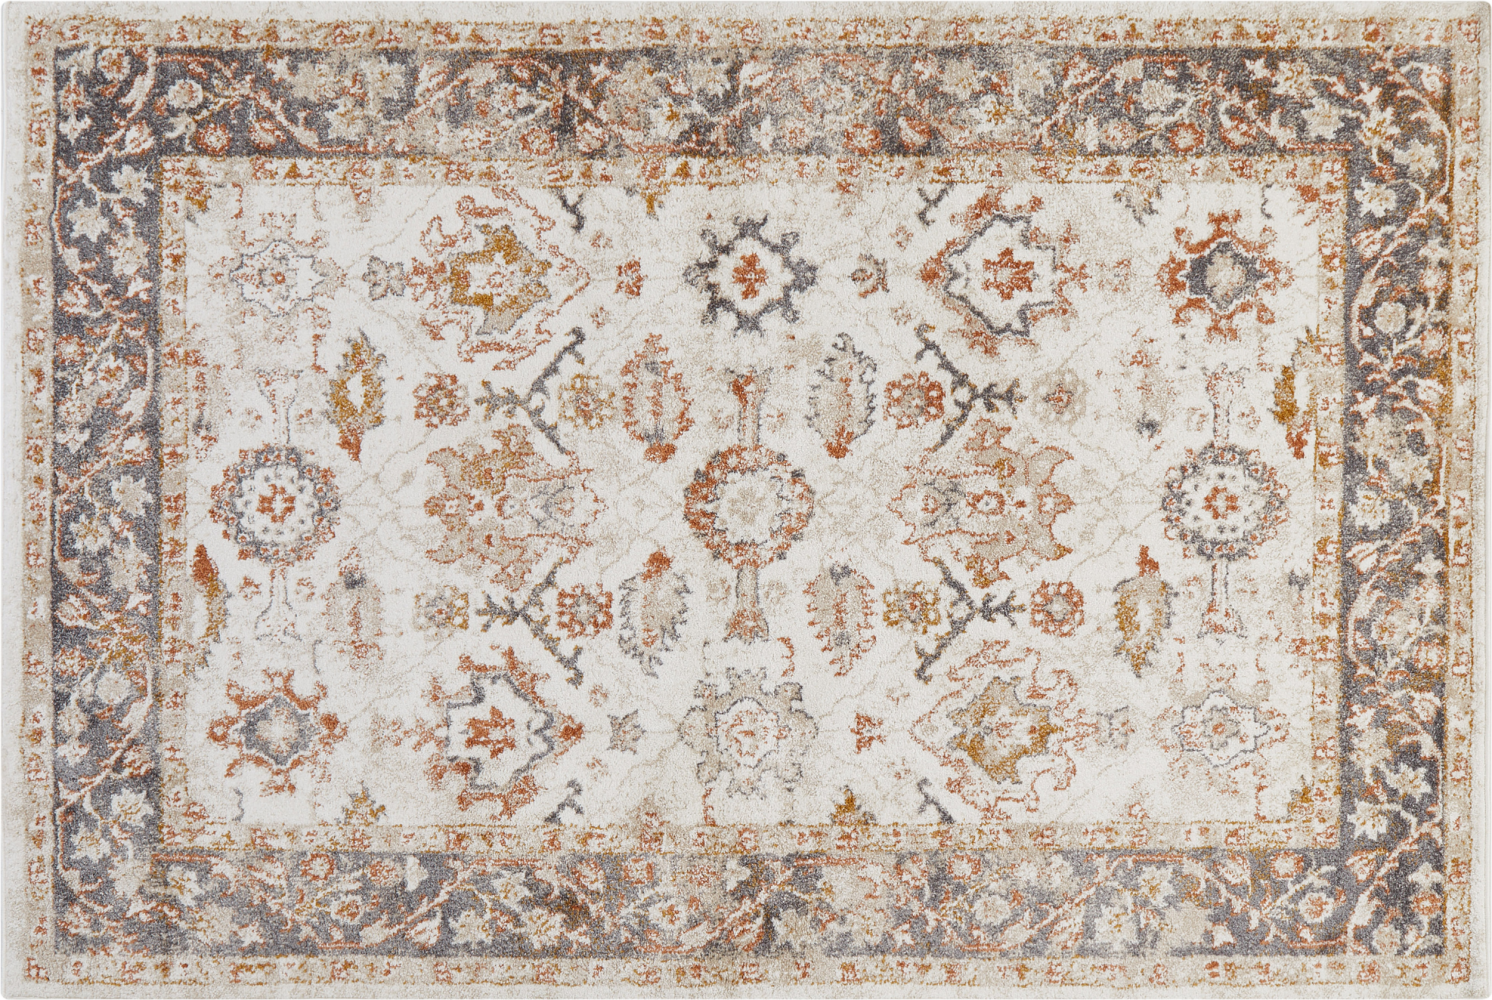 Teppich beige 200 x 300 cm orientalisches Muster Kurzflor NURNUS Bild 1